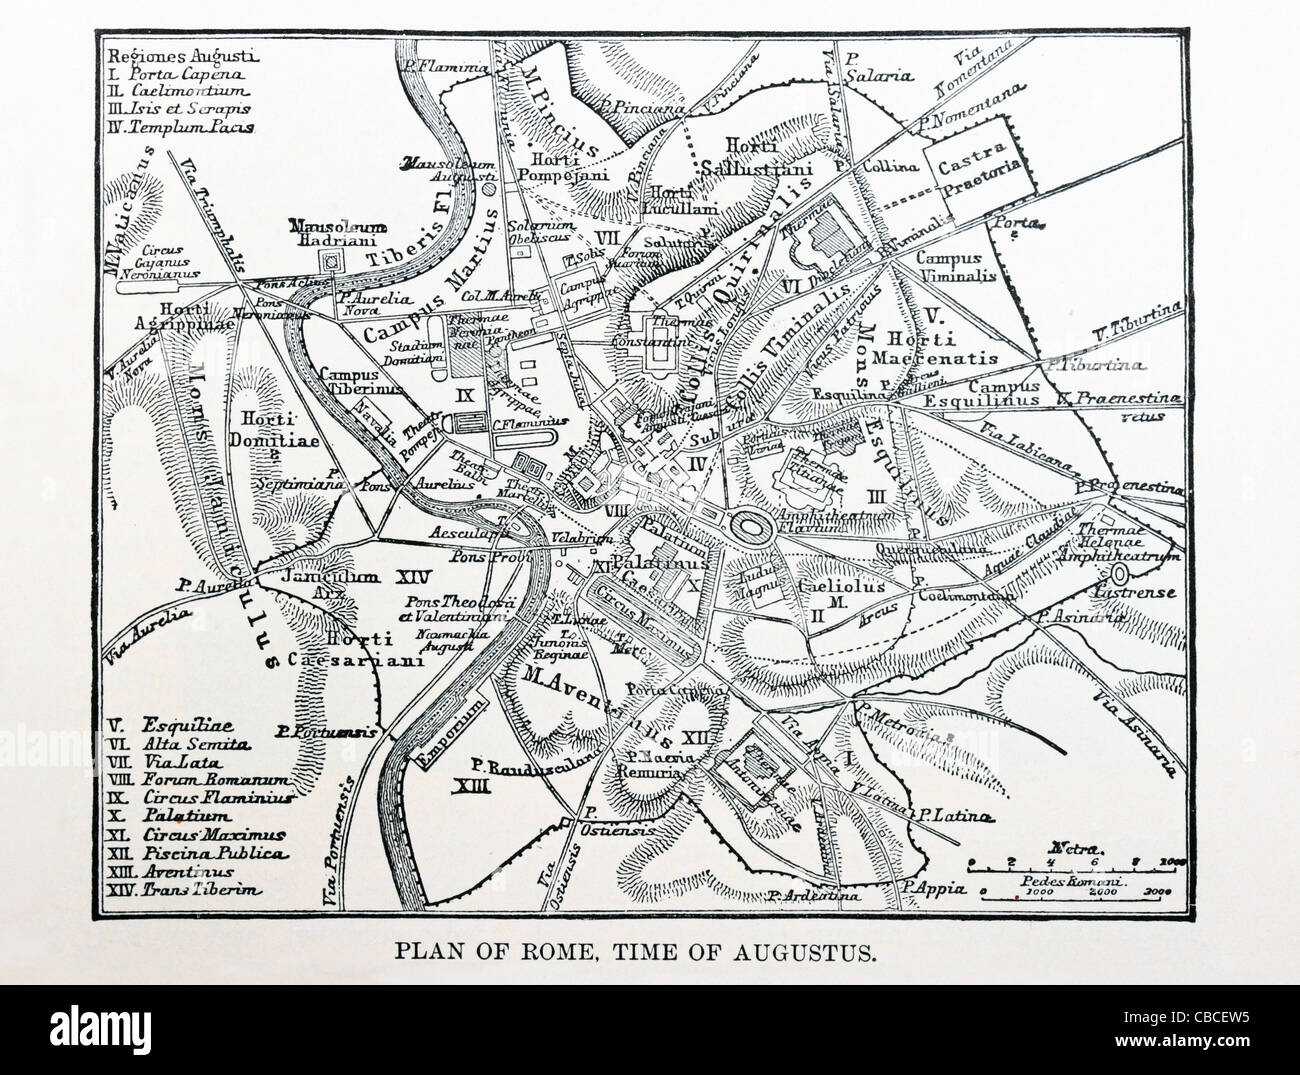 Mappa di roma antica immagini e fotografie stock ad alta risoluzione - Alamy